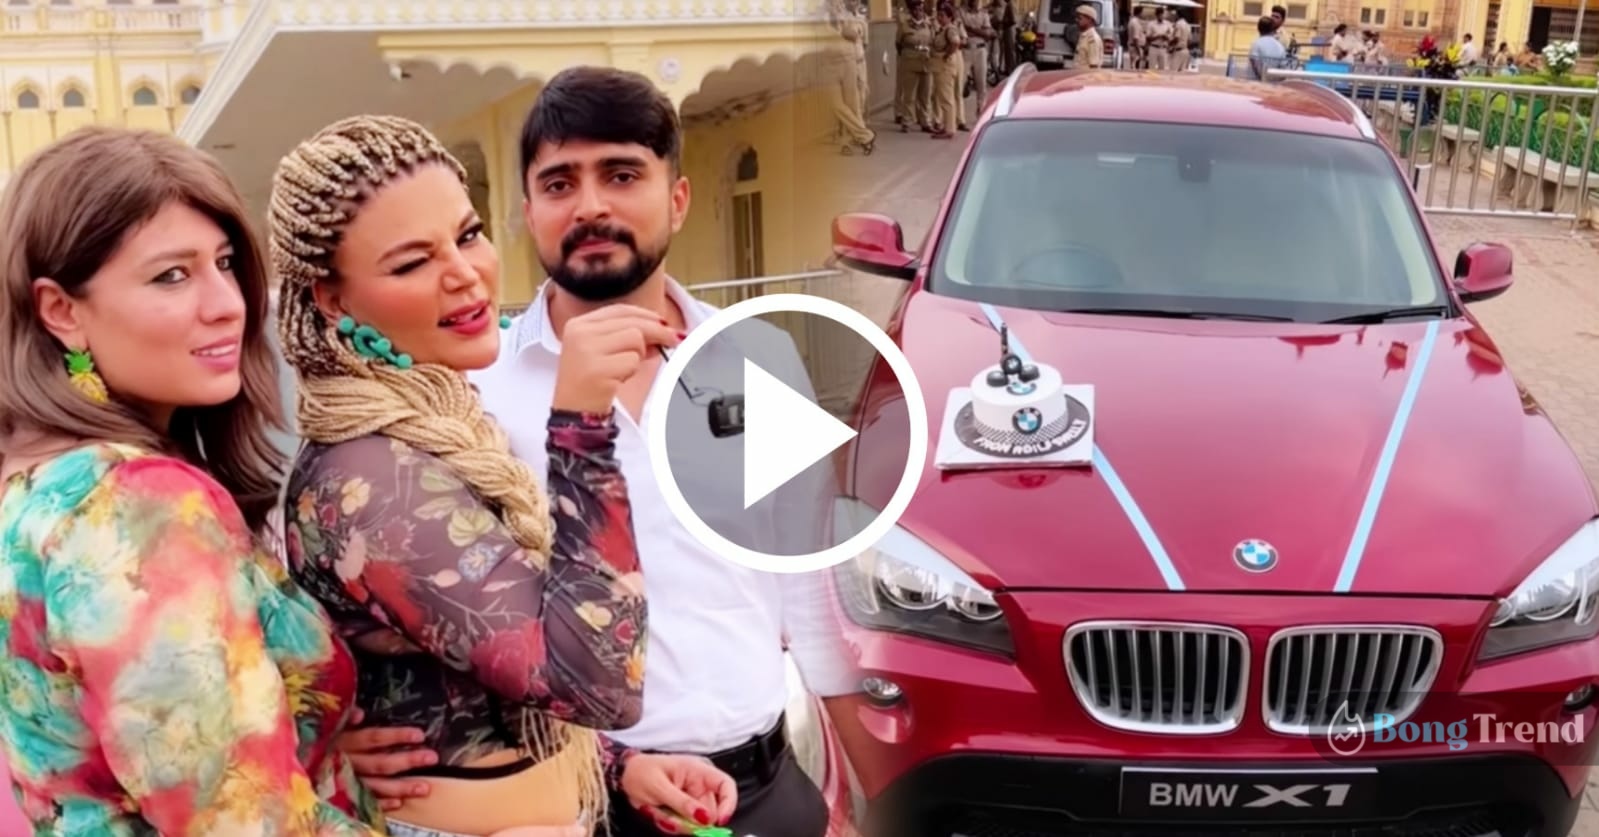 ড্রামা কুইন,Drama Queen,রাখি সাওয়ান্ত,Rakhi Sawant,বিএমডব্লিউ,BMW,গাড়ি উপহার,Car Gift,ভাইরাল ভিডিও,Viral Video